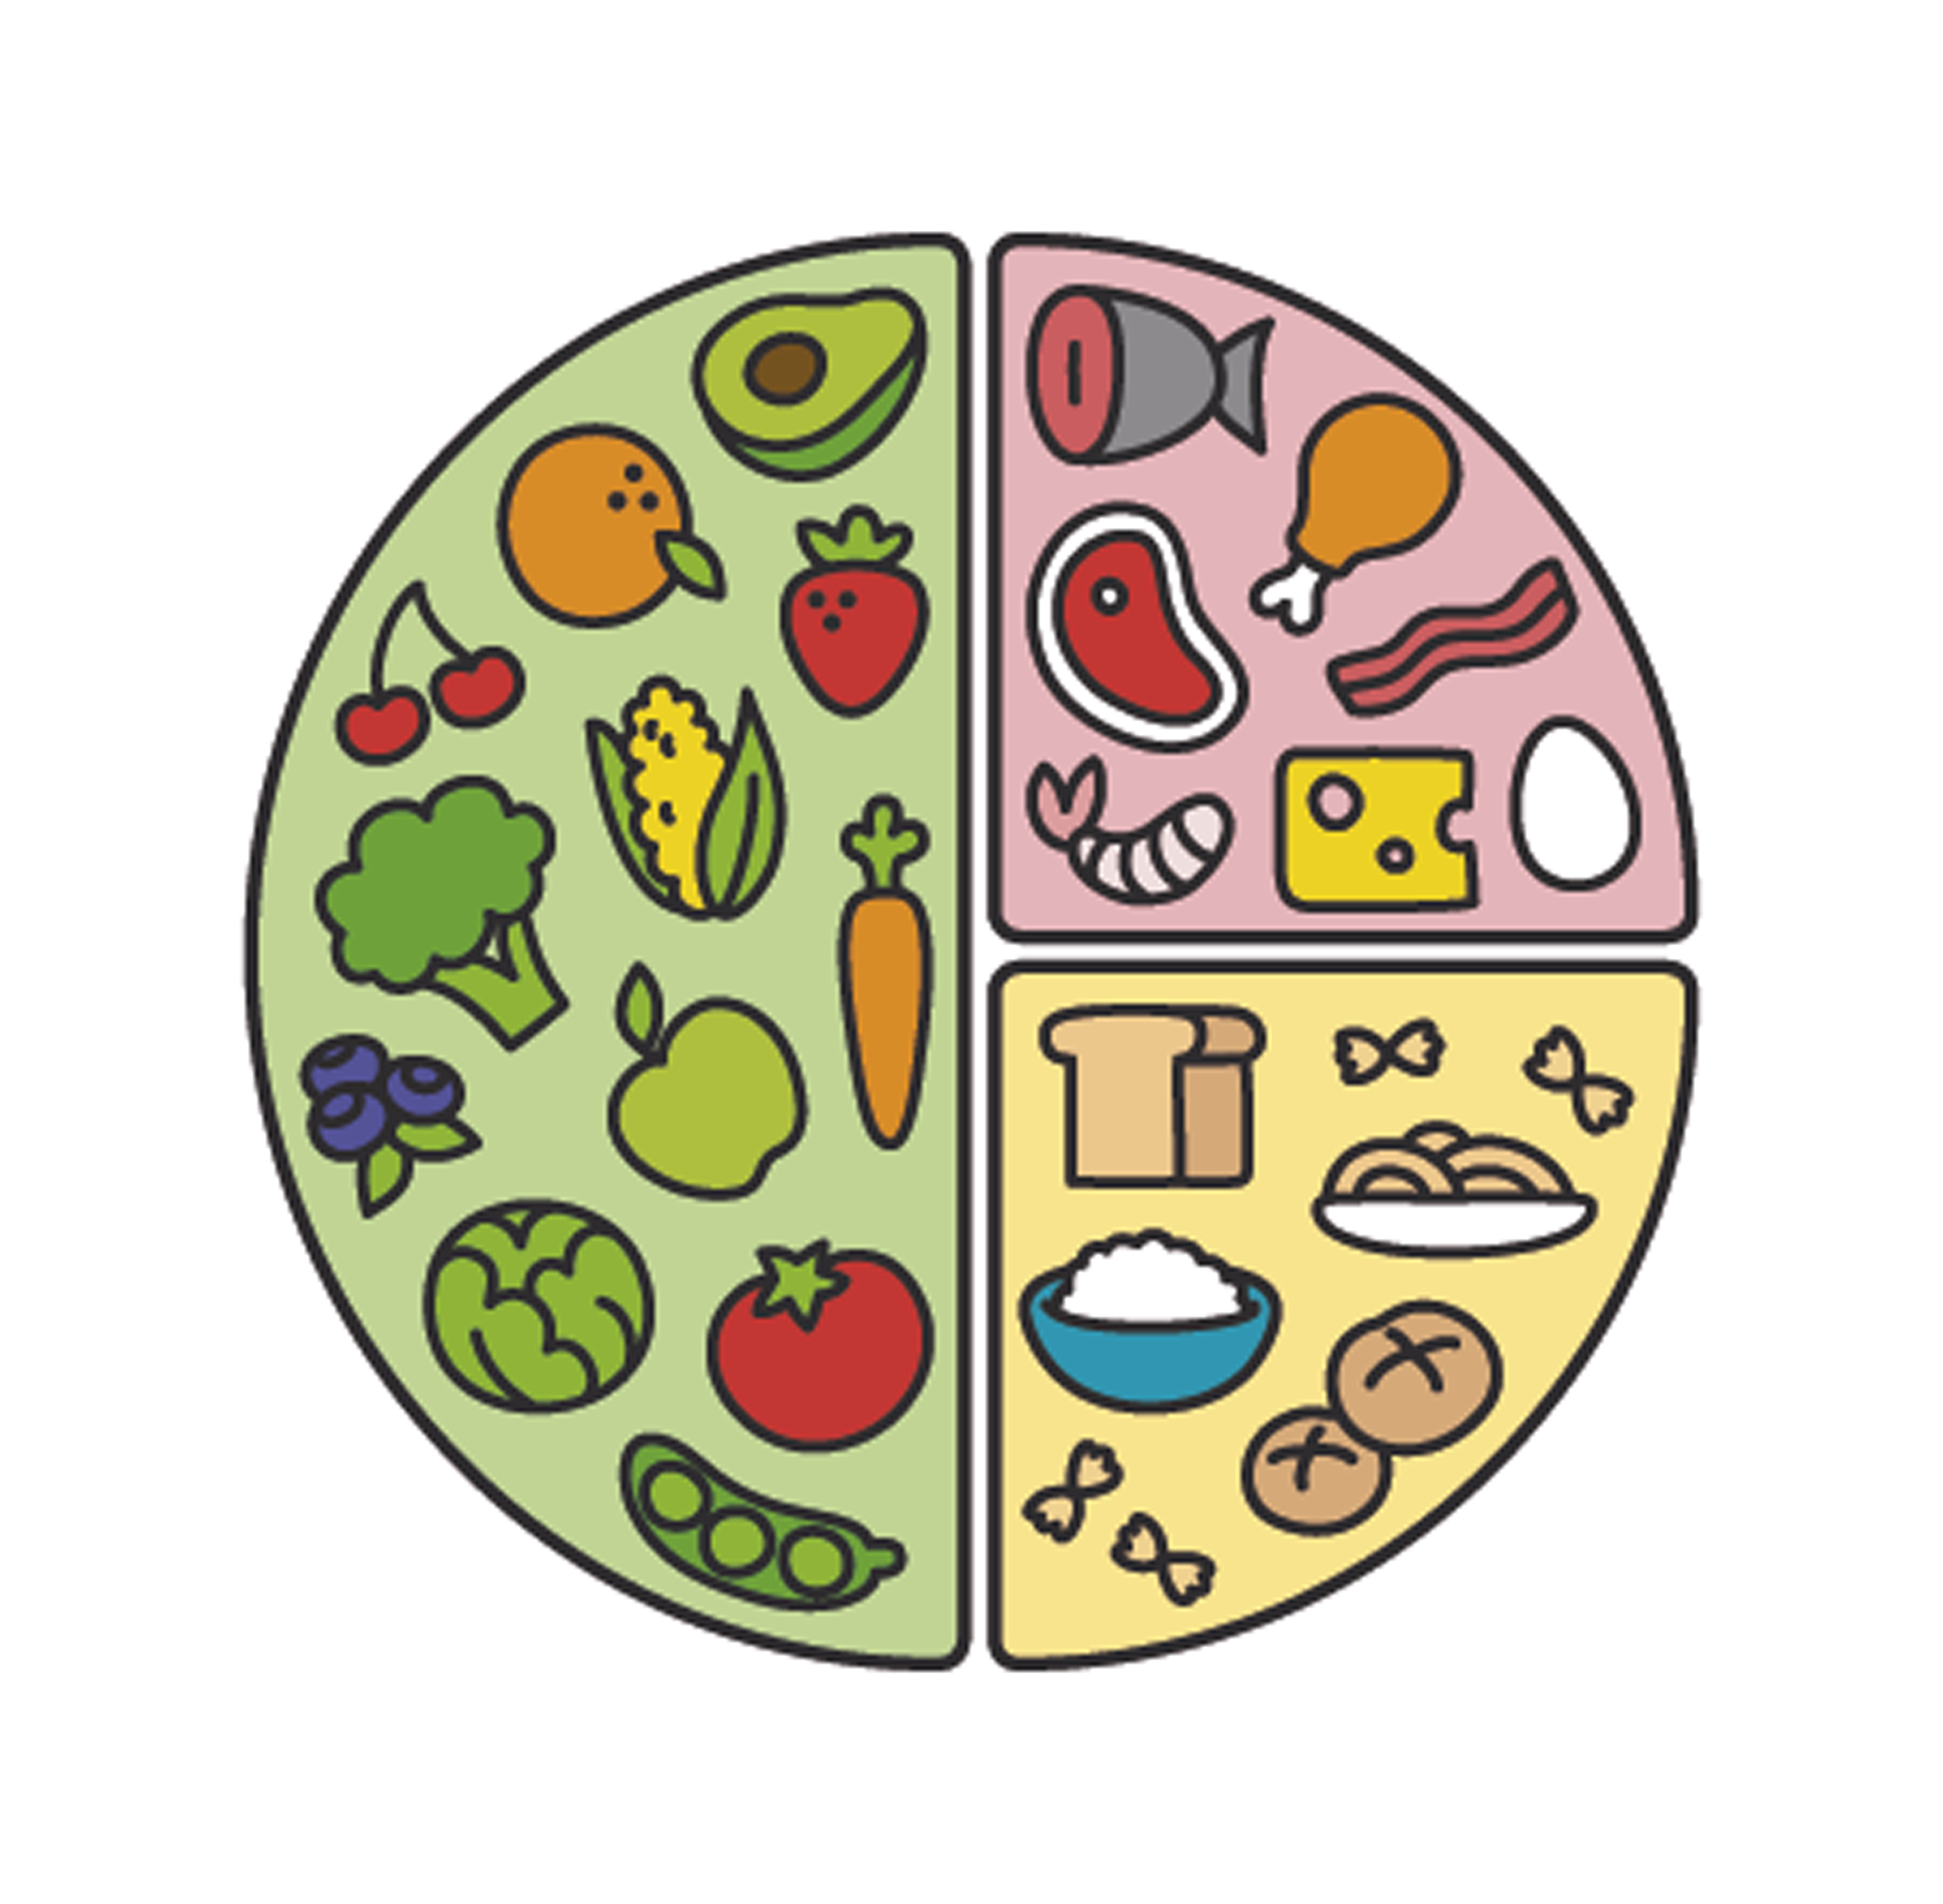 Qué es la “teoría o método” del plato? y para qué sirve - Maheso